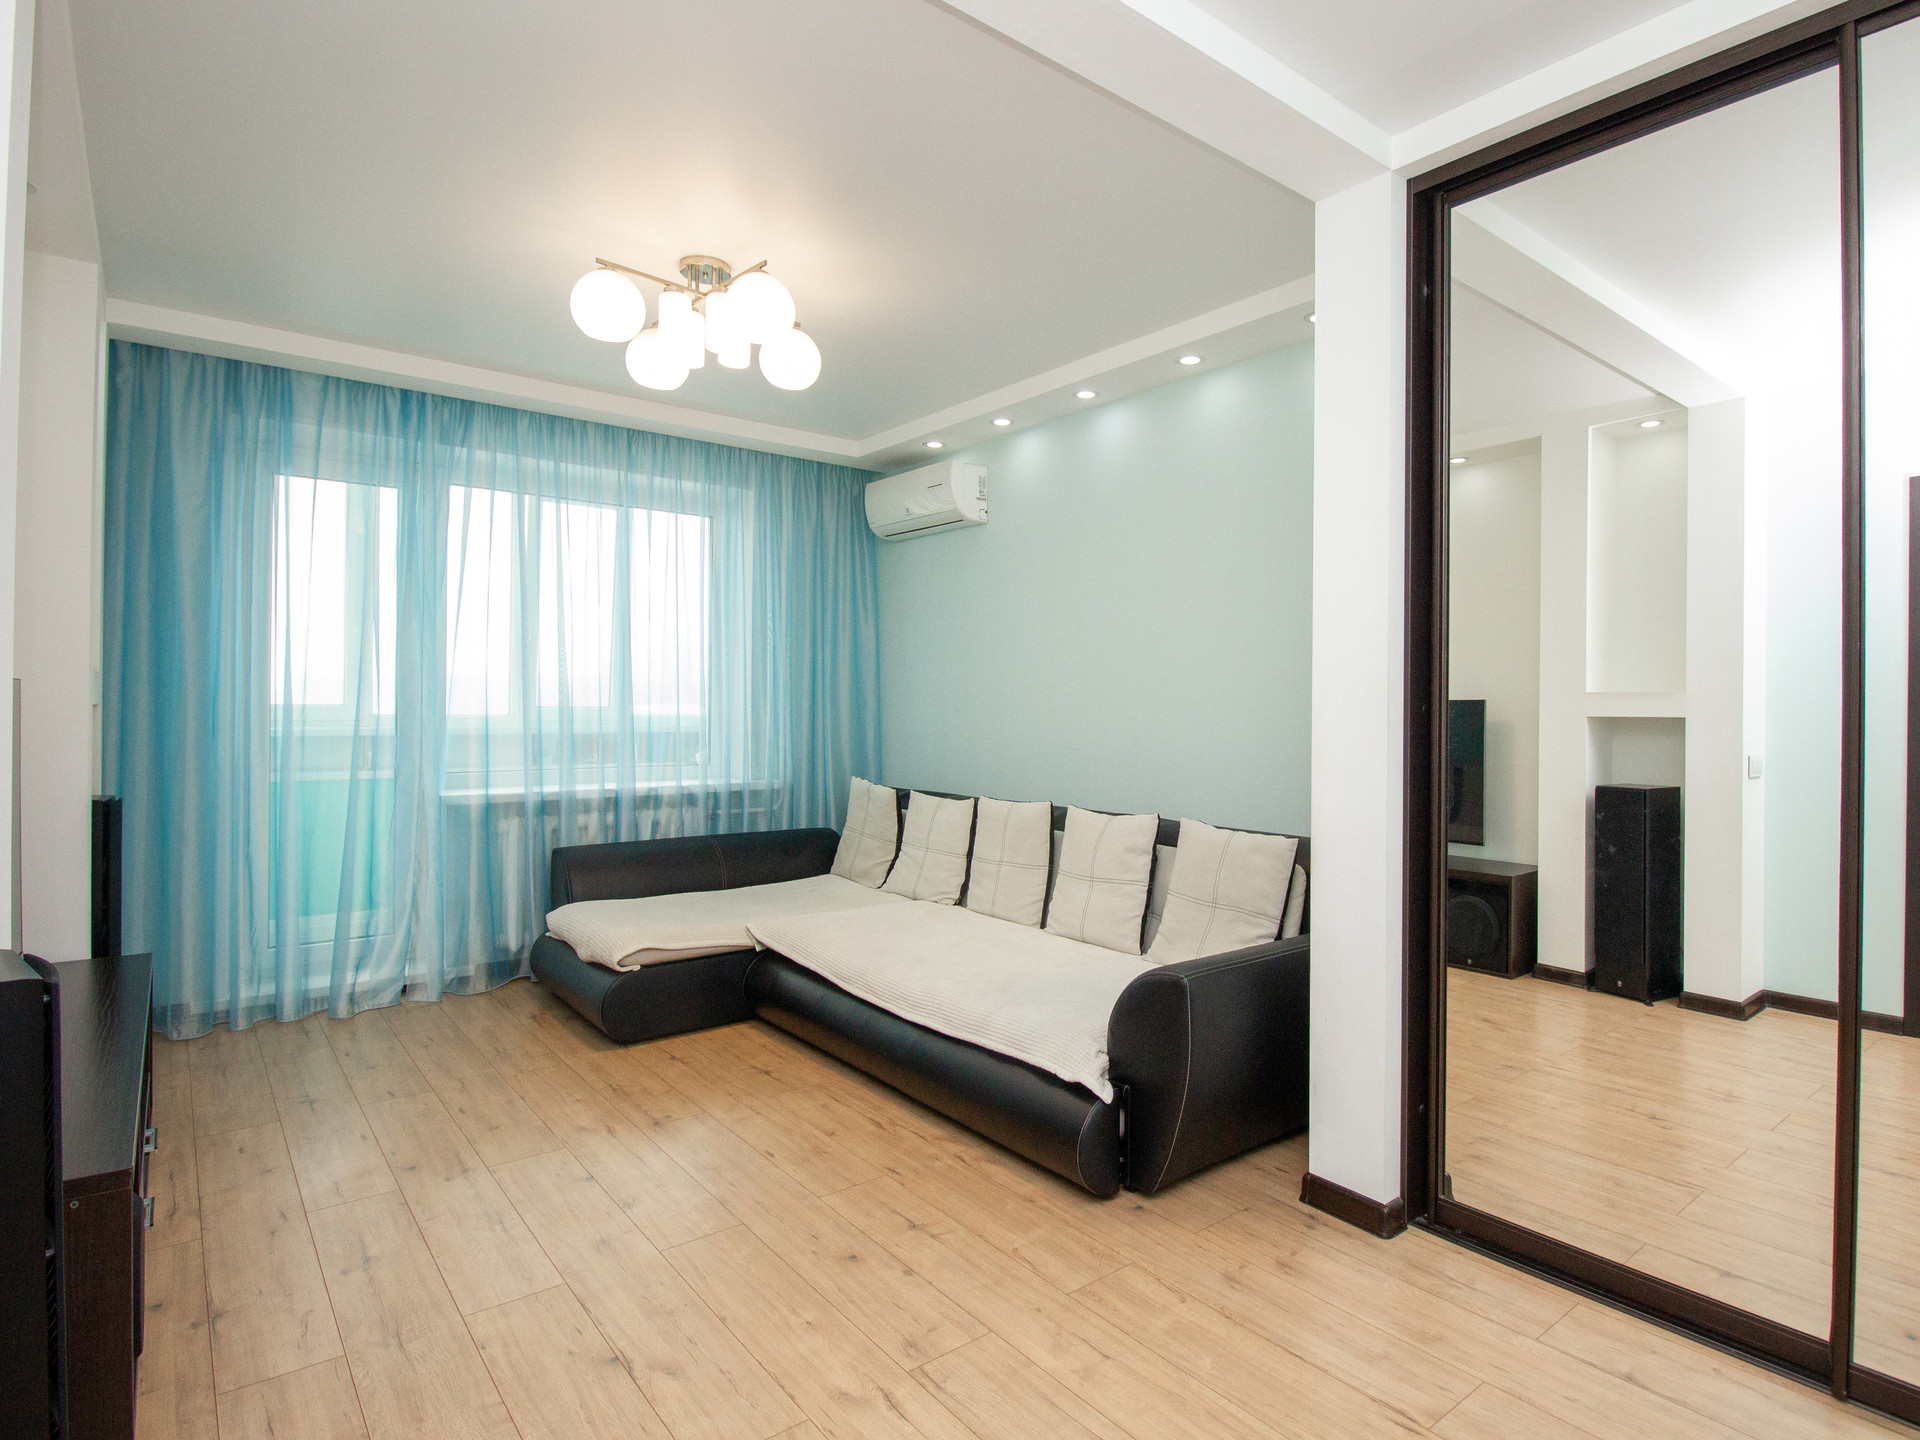 Купить квартиру в ульяновске объявления. Ливанова 32 2 комнатную квартиру.